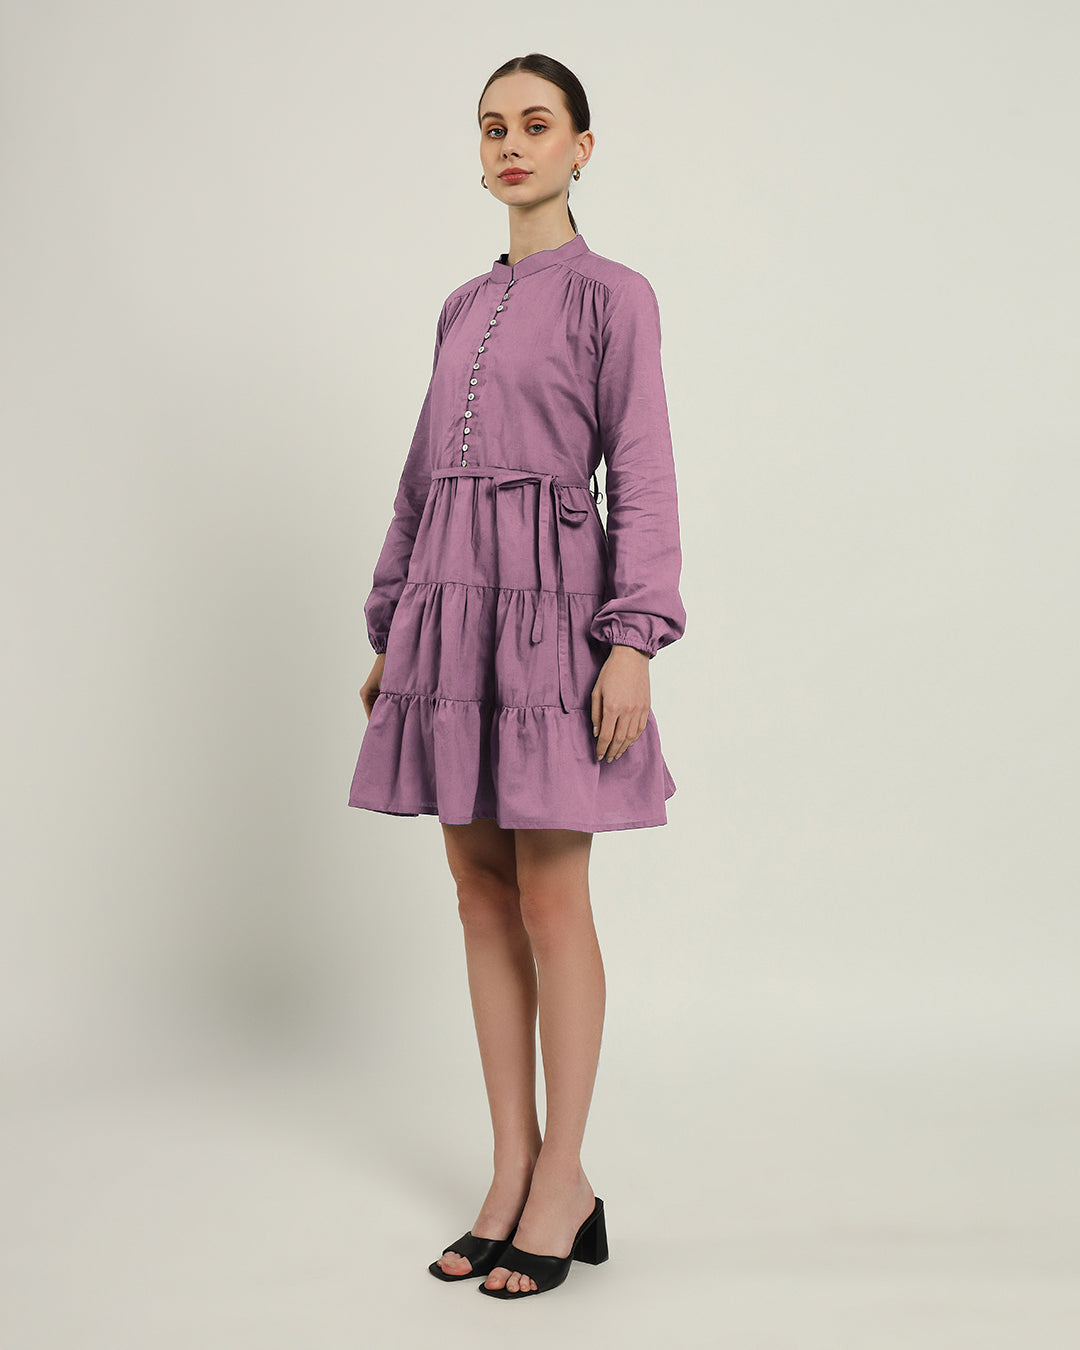 The Ely Purple Swirl Dress